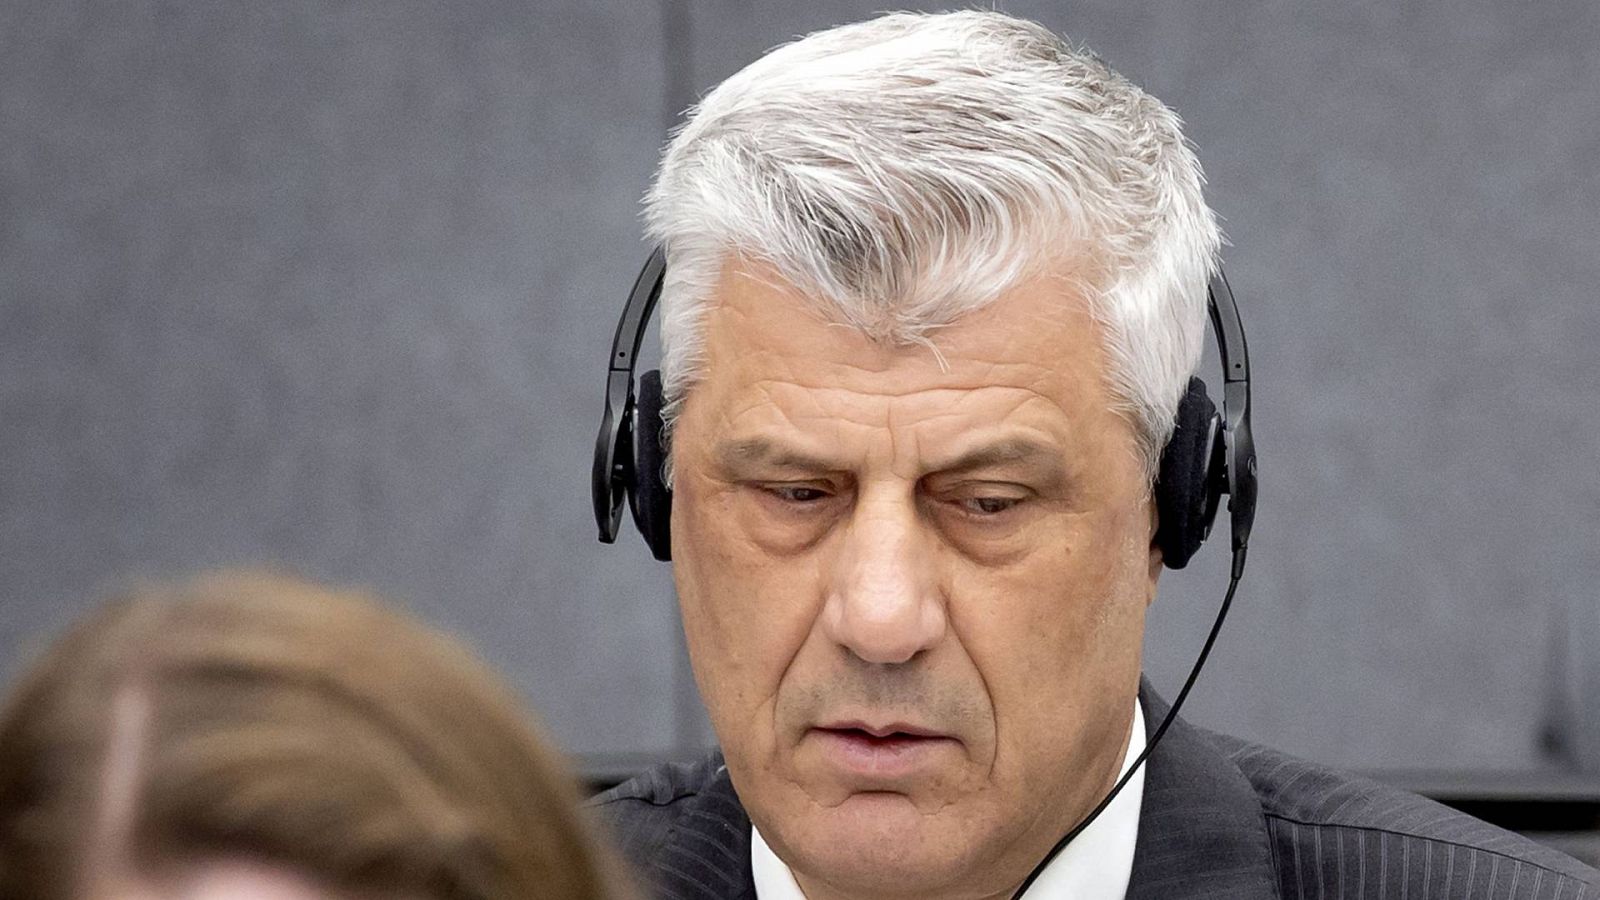 Hashim Thaci, comparece ante el Tribunal de Kosovo en La Haya por cargos de crímenes de guerra